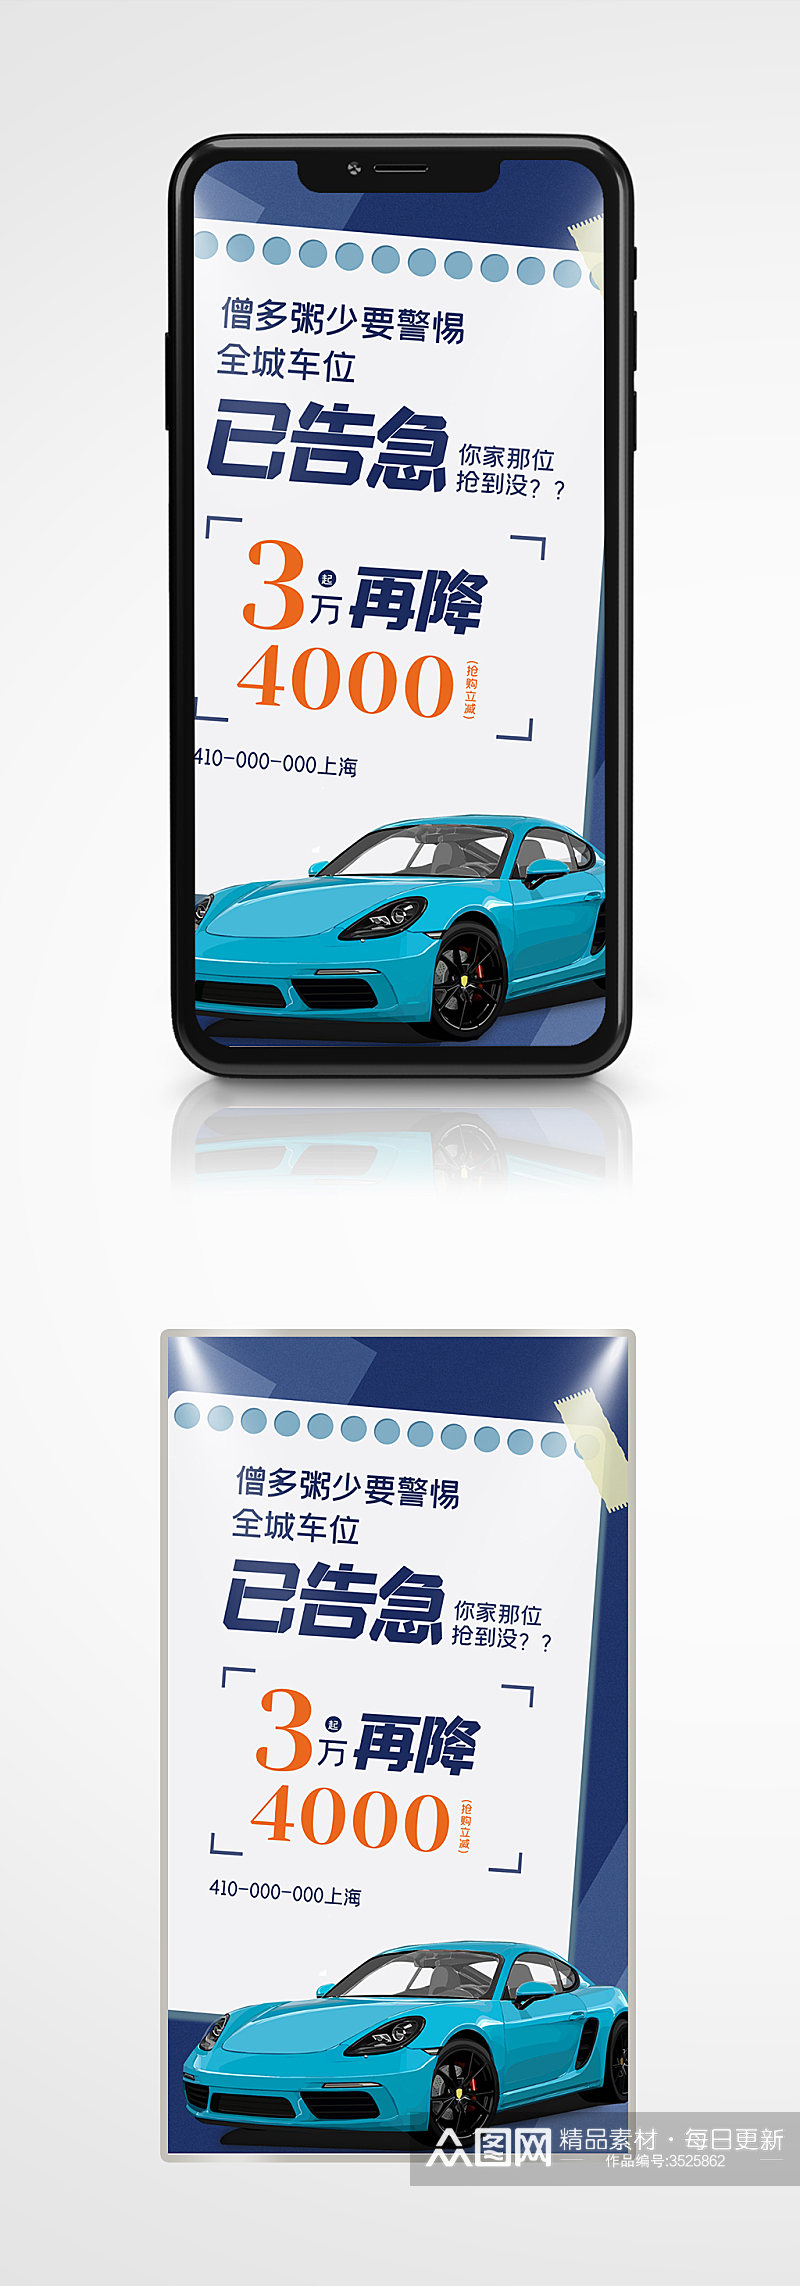 车位销售营销创意手机海报蓝色简约创意素材